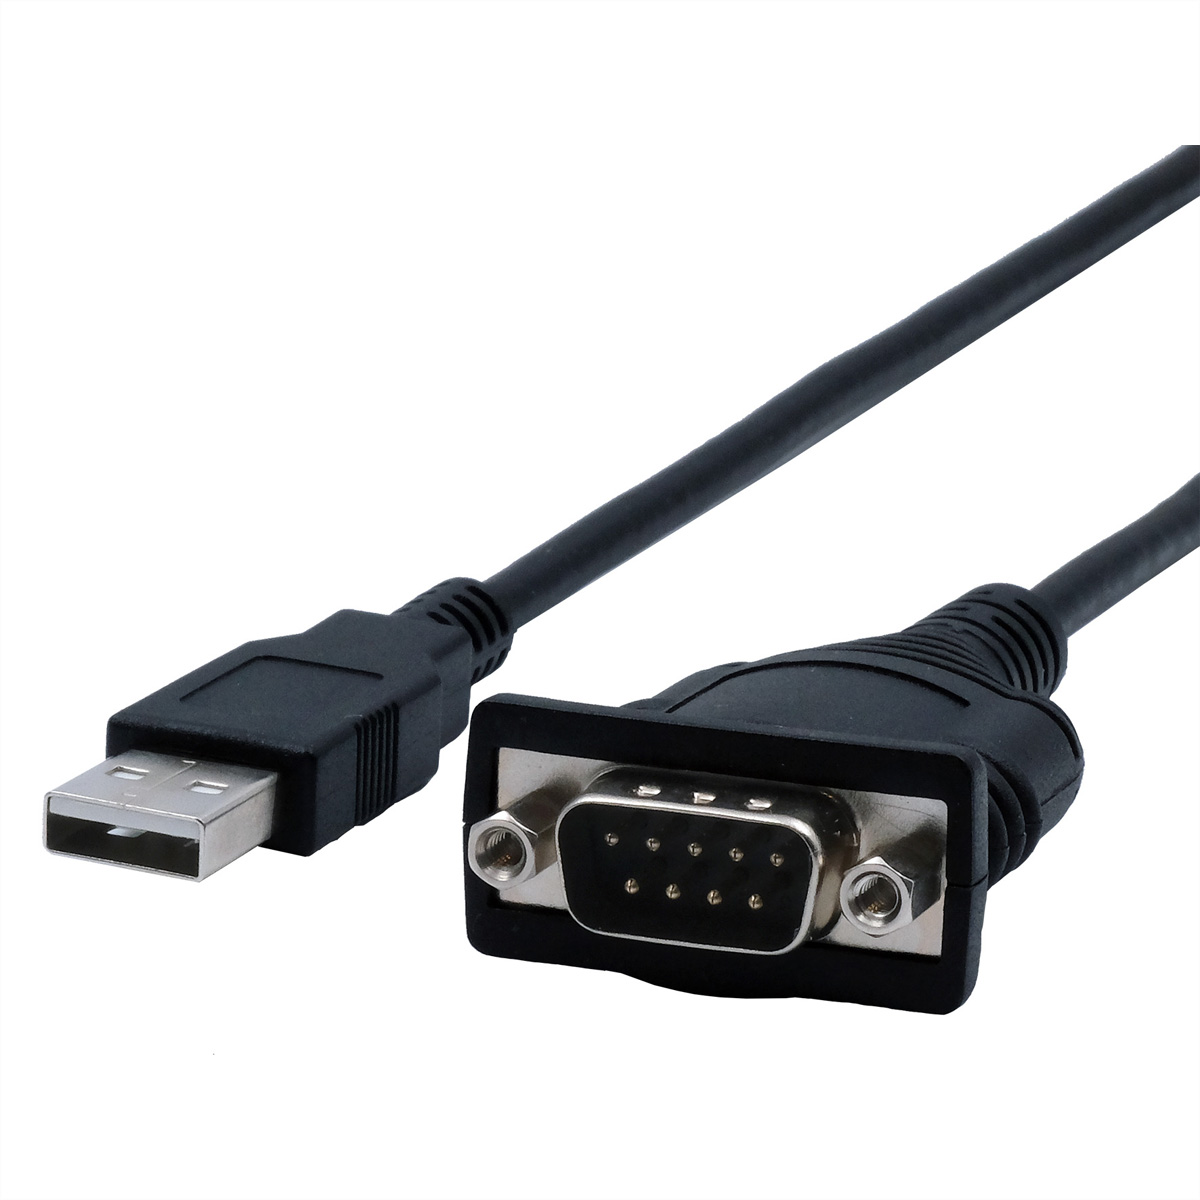 EXSYS EX-13001 USB 2.0 zu 1 x Seriell RS-232 Kabel mit 9 Pin Stecker FTDI Chip-Set